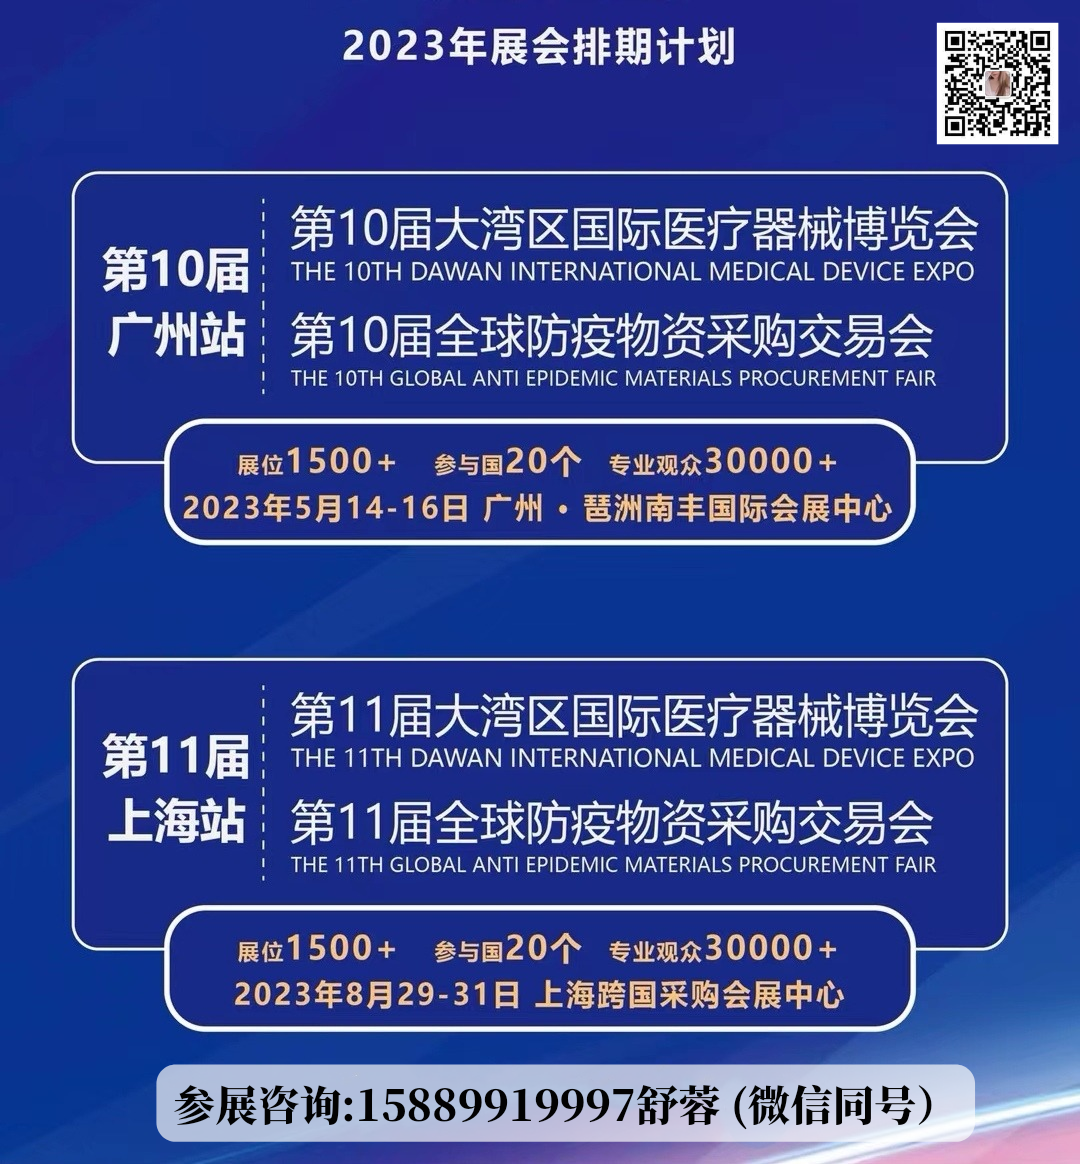 2023第11届防疫物资展览会2023第11届广州国际防护用品展览会图片